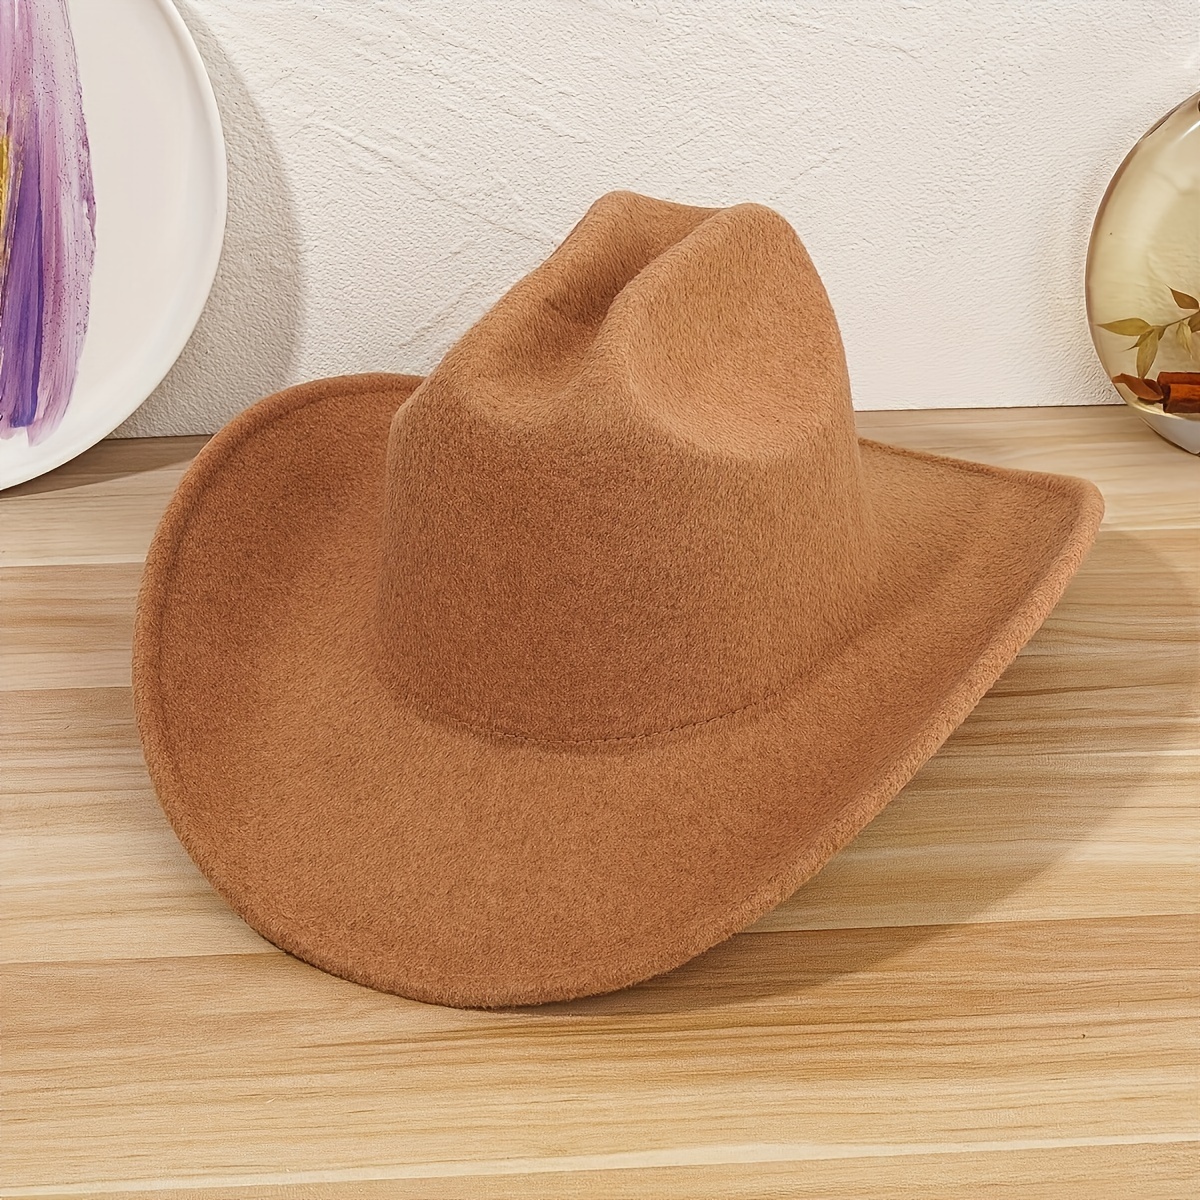 Tan Felt Cowboy Hat (6 Per Case)